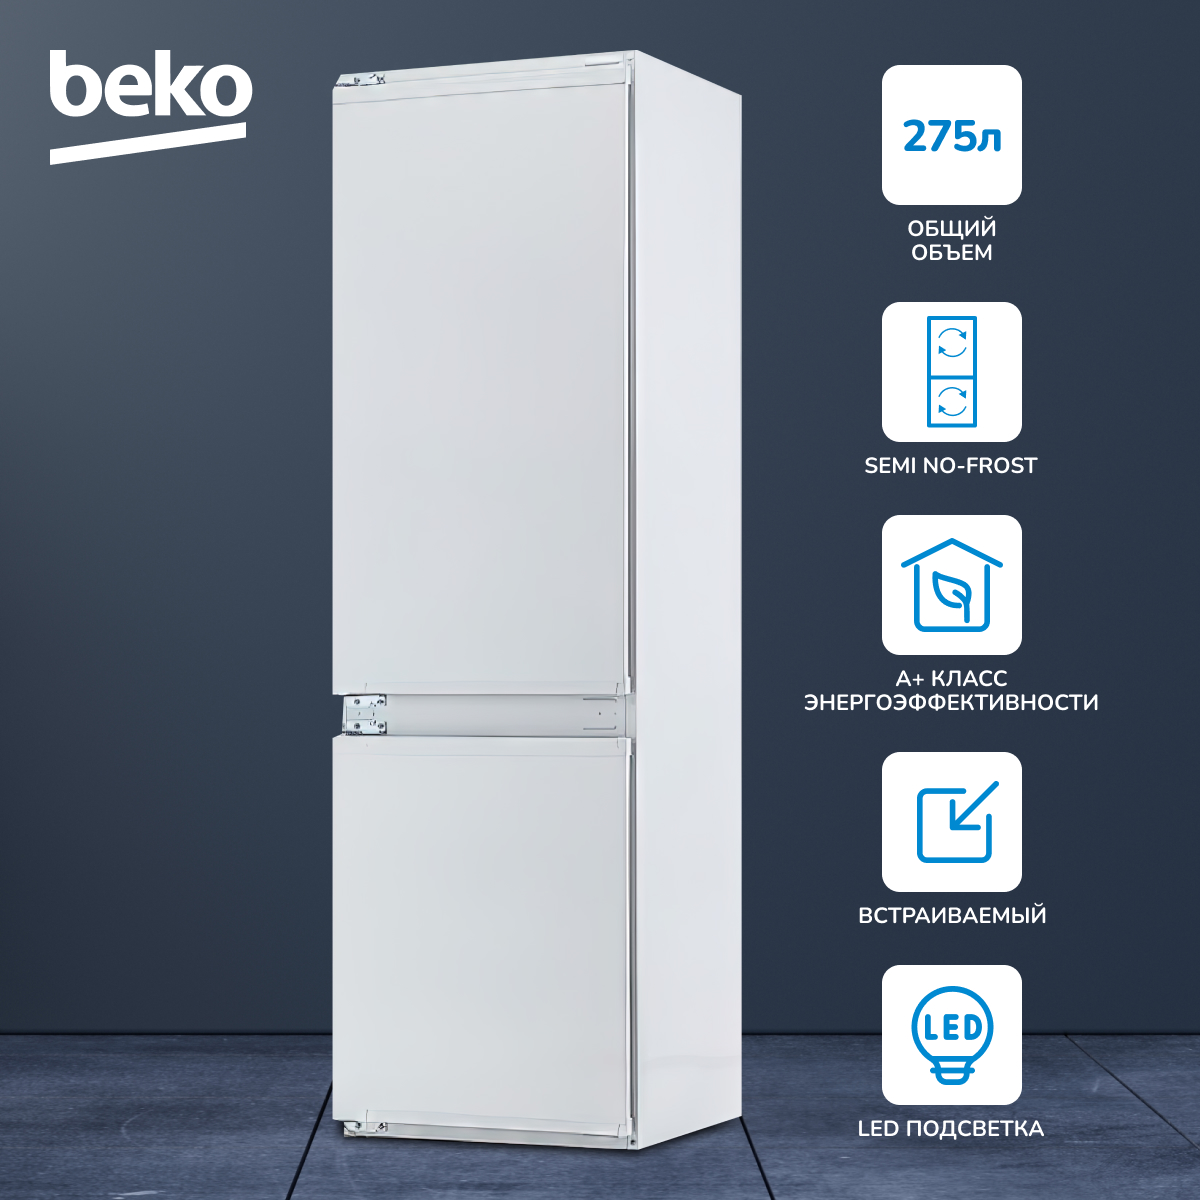 Встраиваемый холодильник Beko BCHA2752S белый